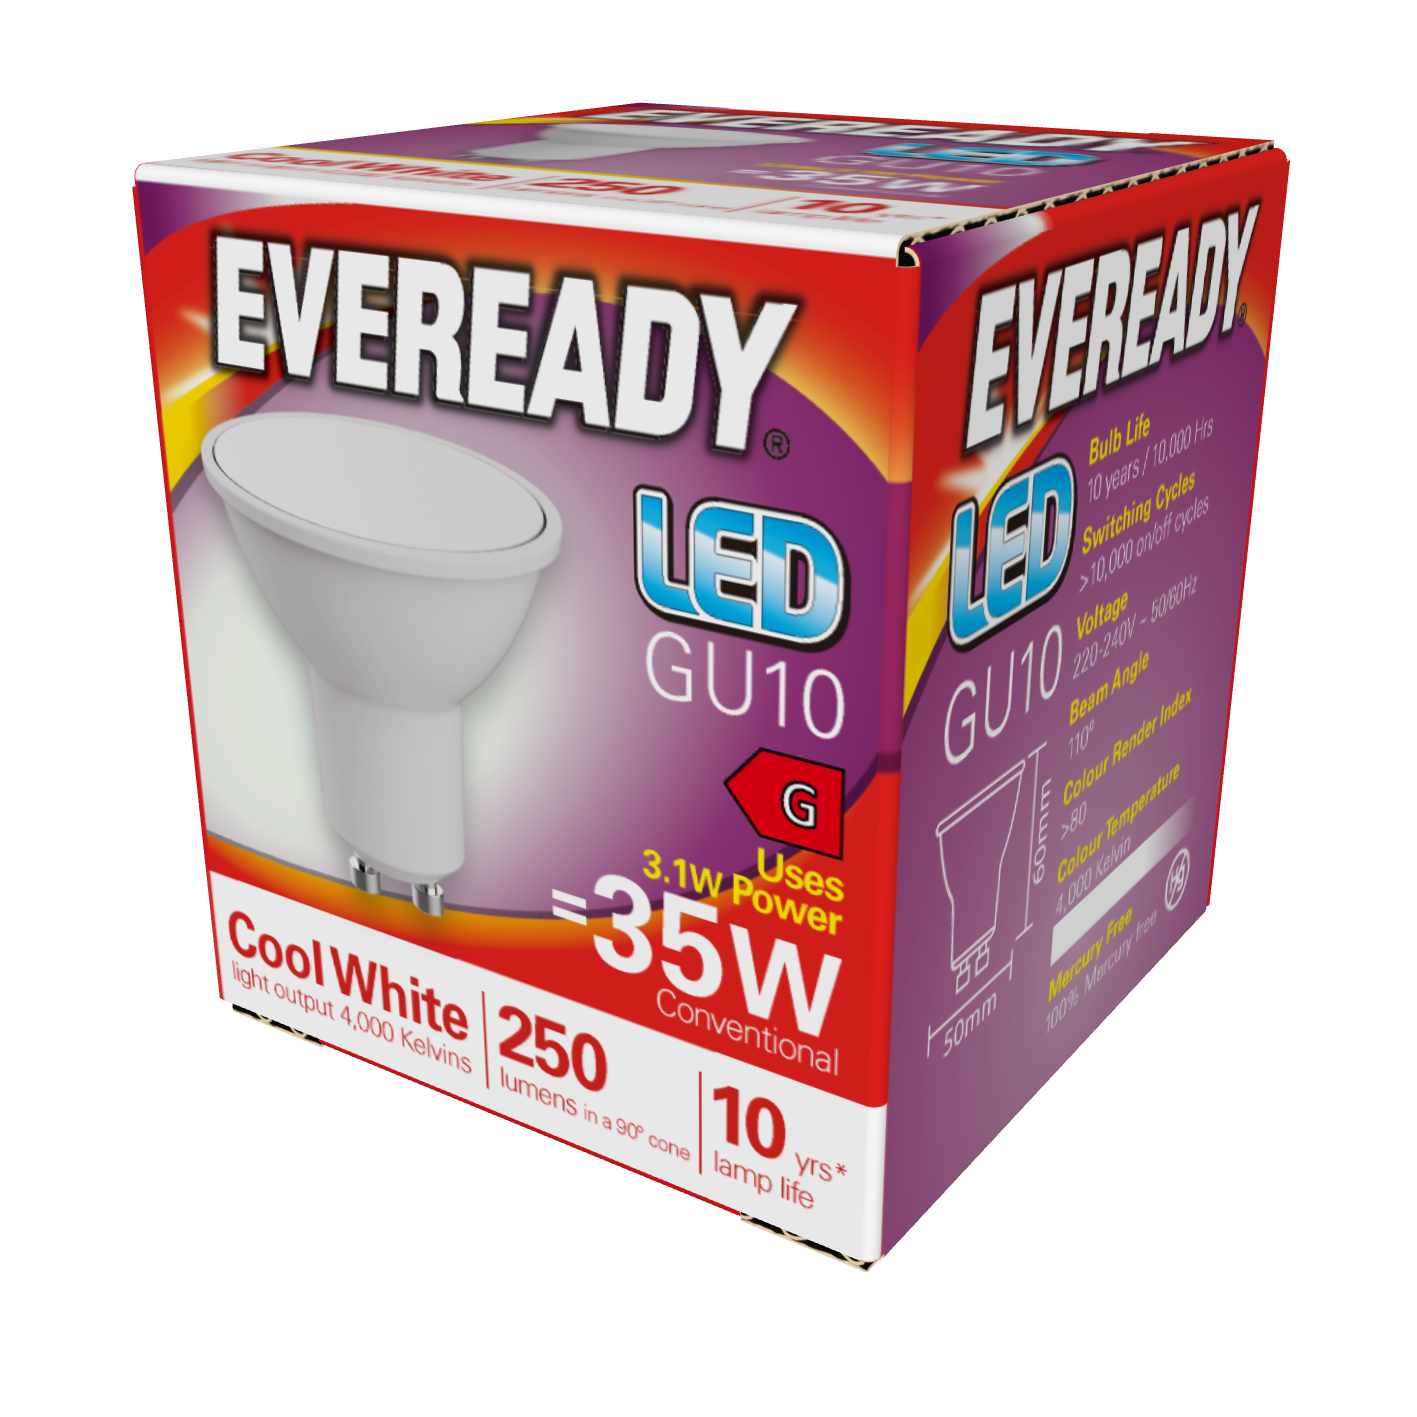 Eveready LED GU10 250 lm 3,1 W 4.000 K (kaltweiß), Packung mit 1 Stück